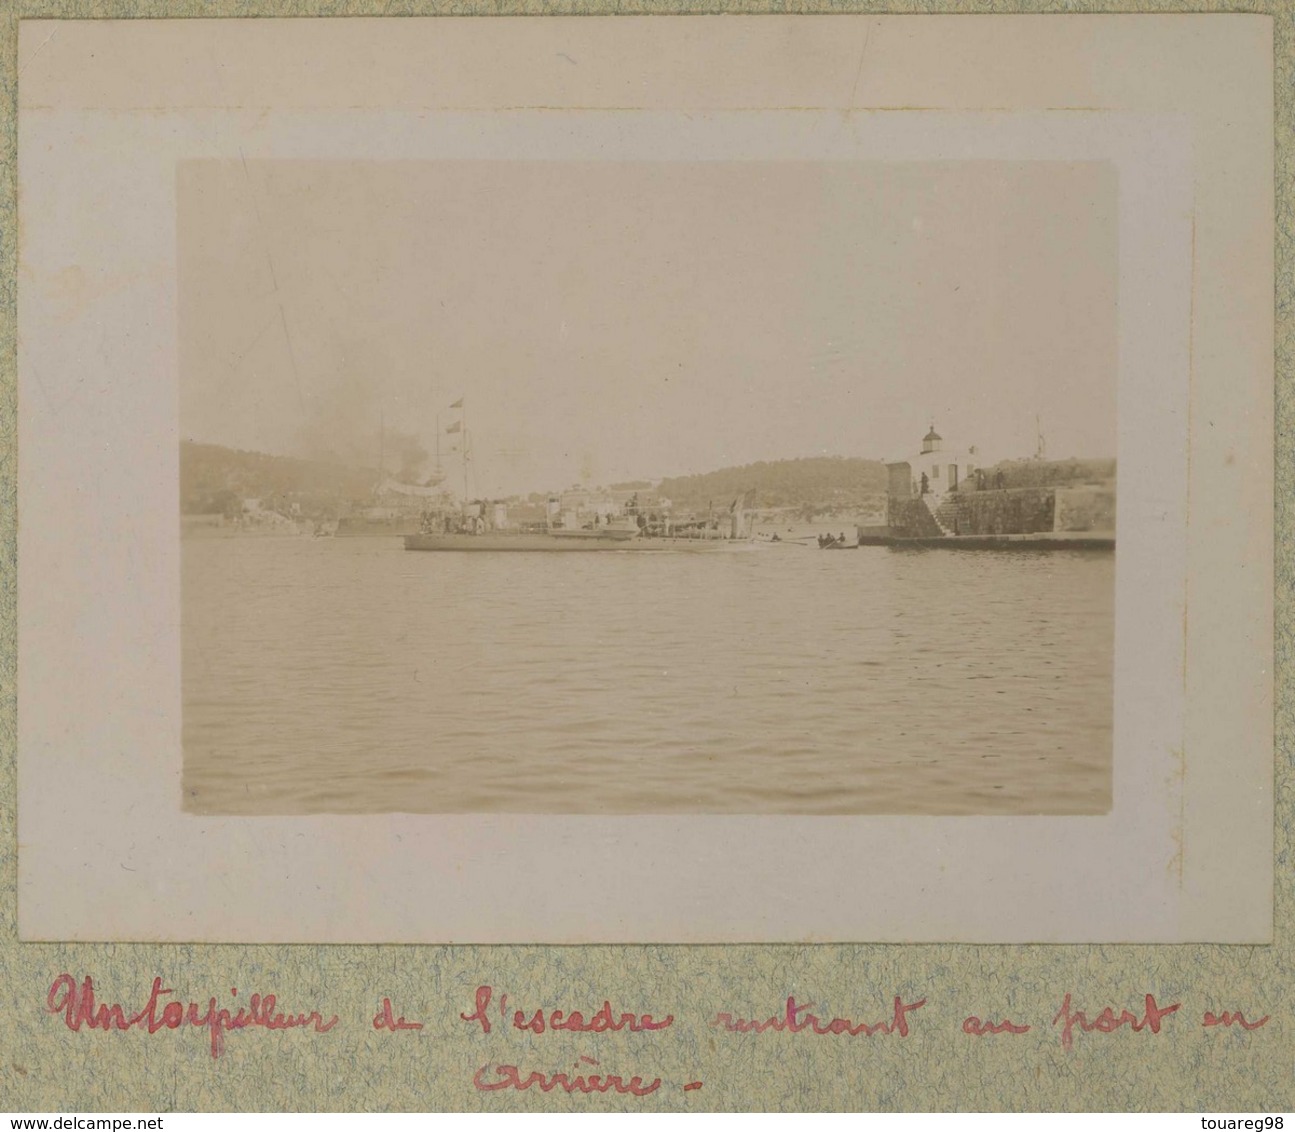 Tirage Circa 1900. Villefranche-sur-Mer (Alpes-Maritimes). Un Torpilleur De L'escadre Rentrant Au Port. Bateau De Guerre - Lieux